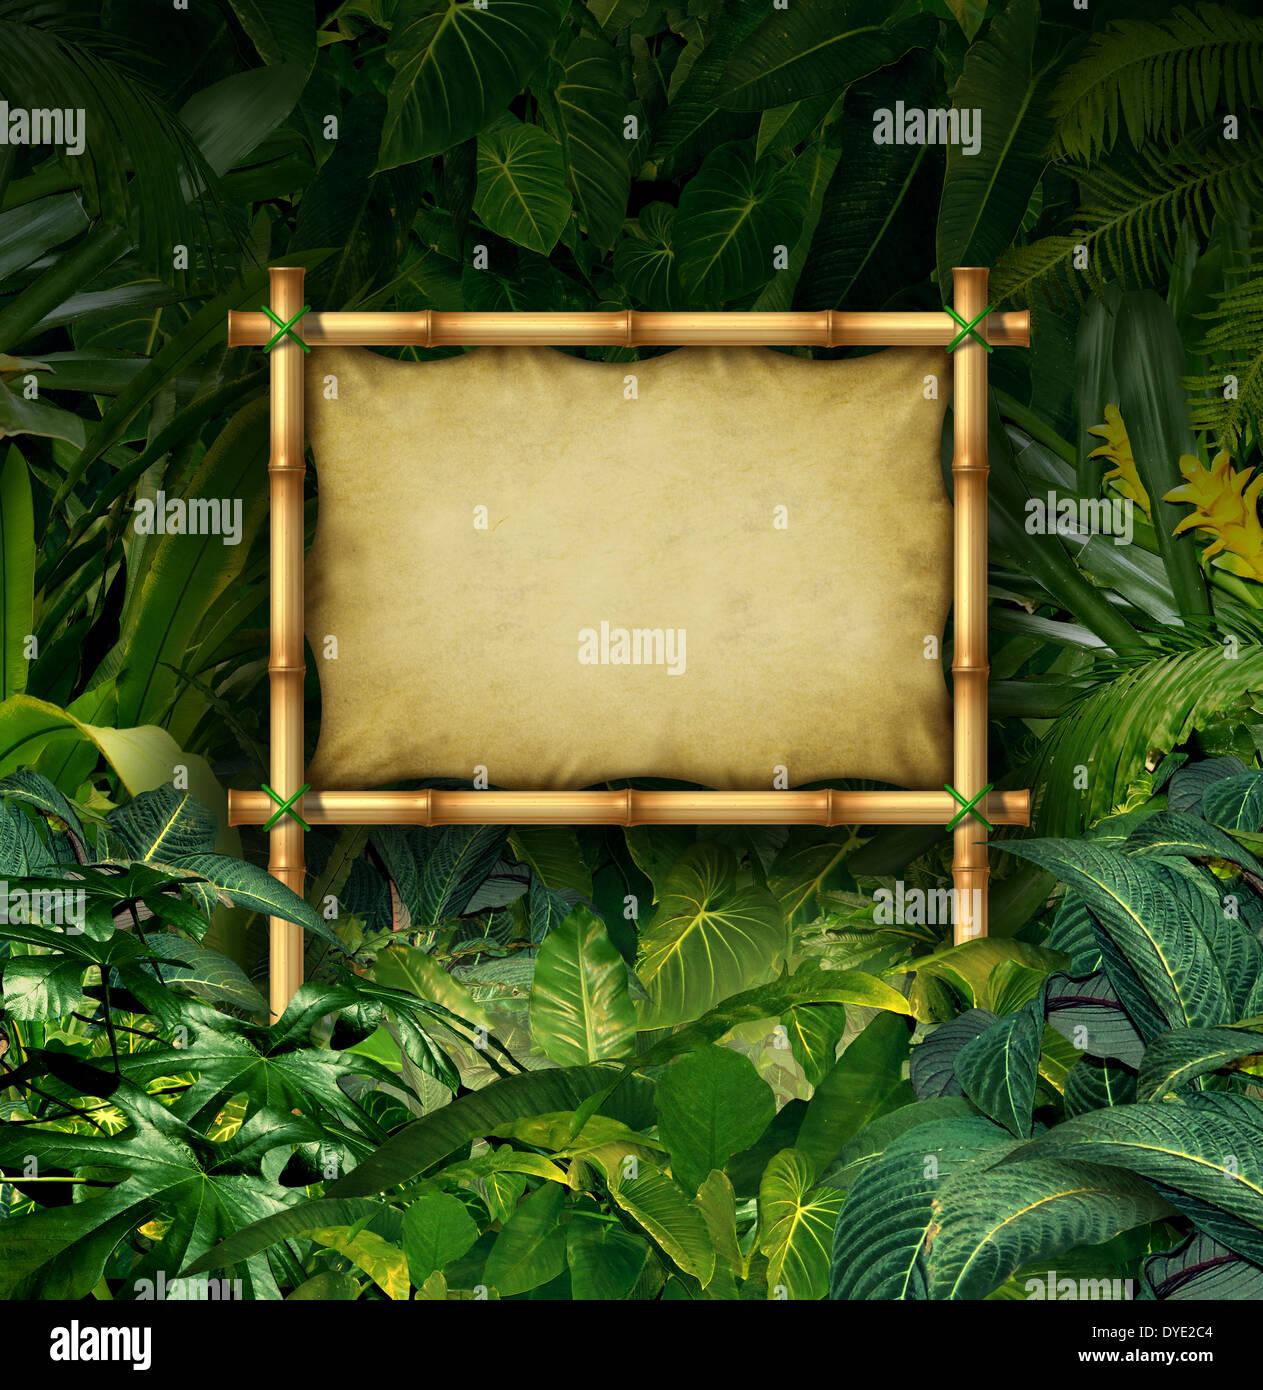 Dschungel Zeichen leeren Plakatwand Konzept als Bambus Banner in eine tropische Pflanze Wald voller grüner Vegetation als Symbol der Natur Kommunikation oder ökologische Werbung. Stockfoto